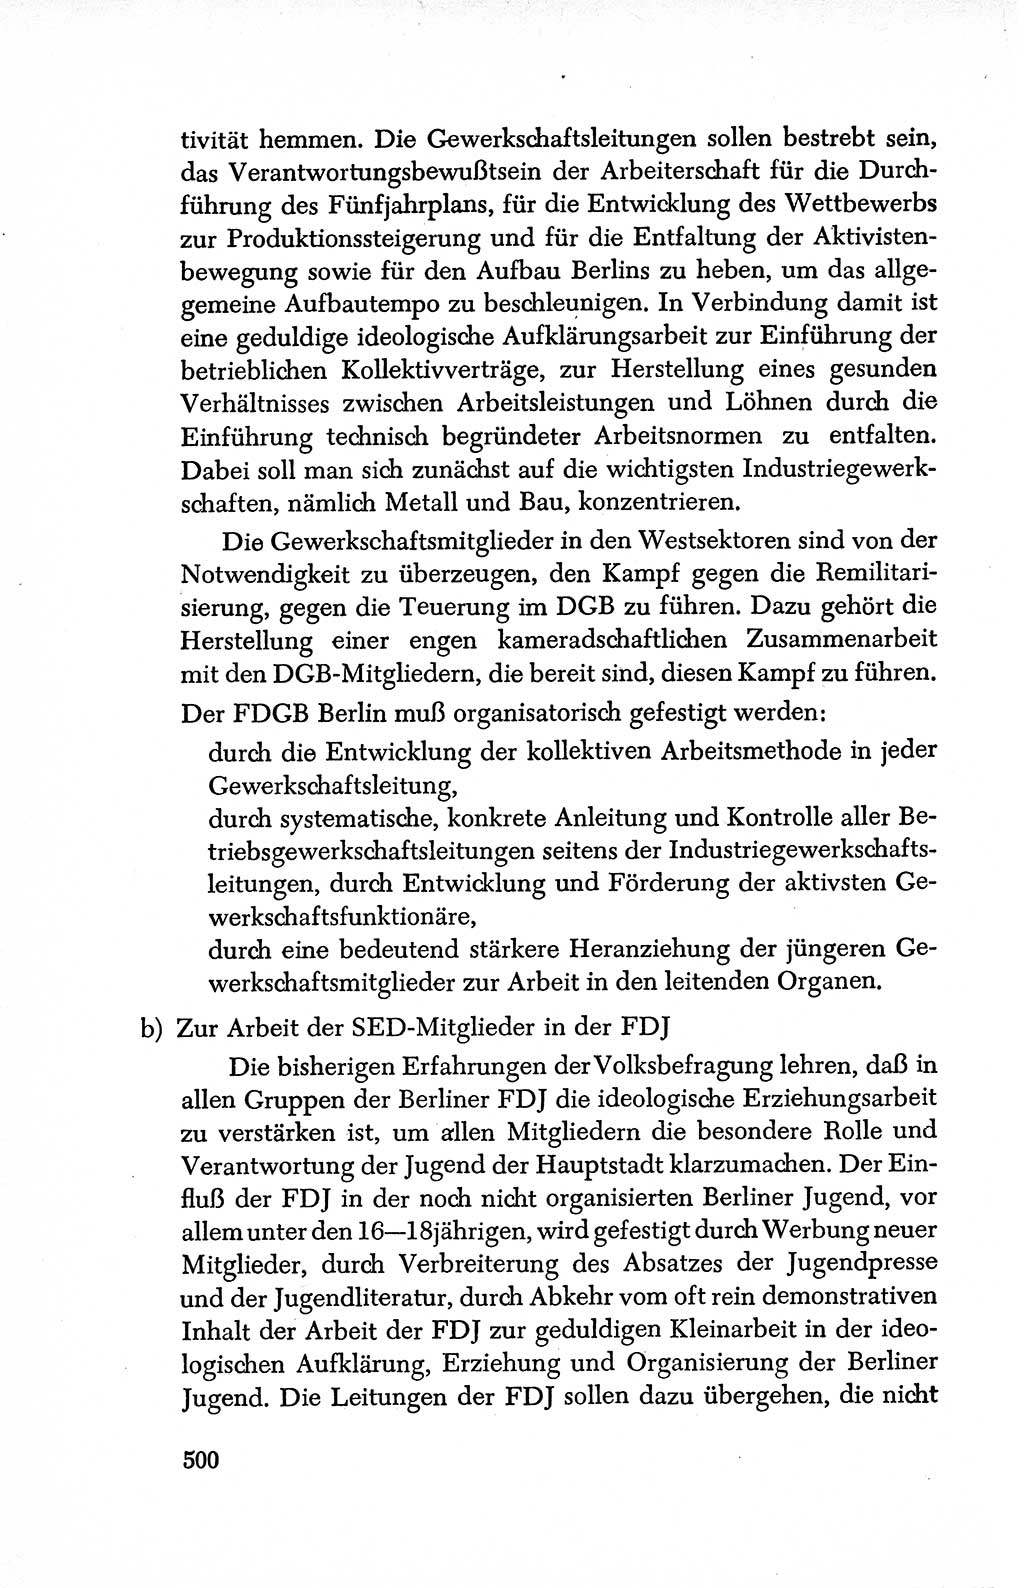 Dokumente der Sozialistischen Einheitspartei Deutschlands (SED) [Deutsche Demokratische Republik (DDR)] 1950-1952, Seite 500 (Dok. SED DDR 1950-1952, S. 500)